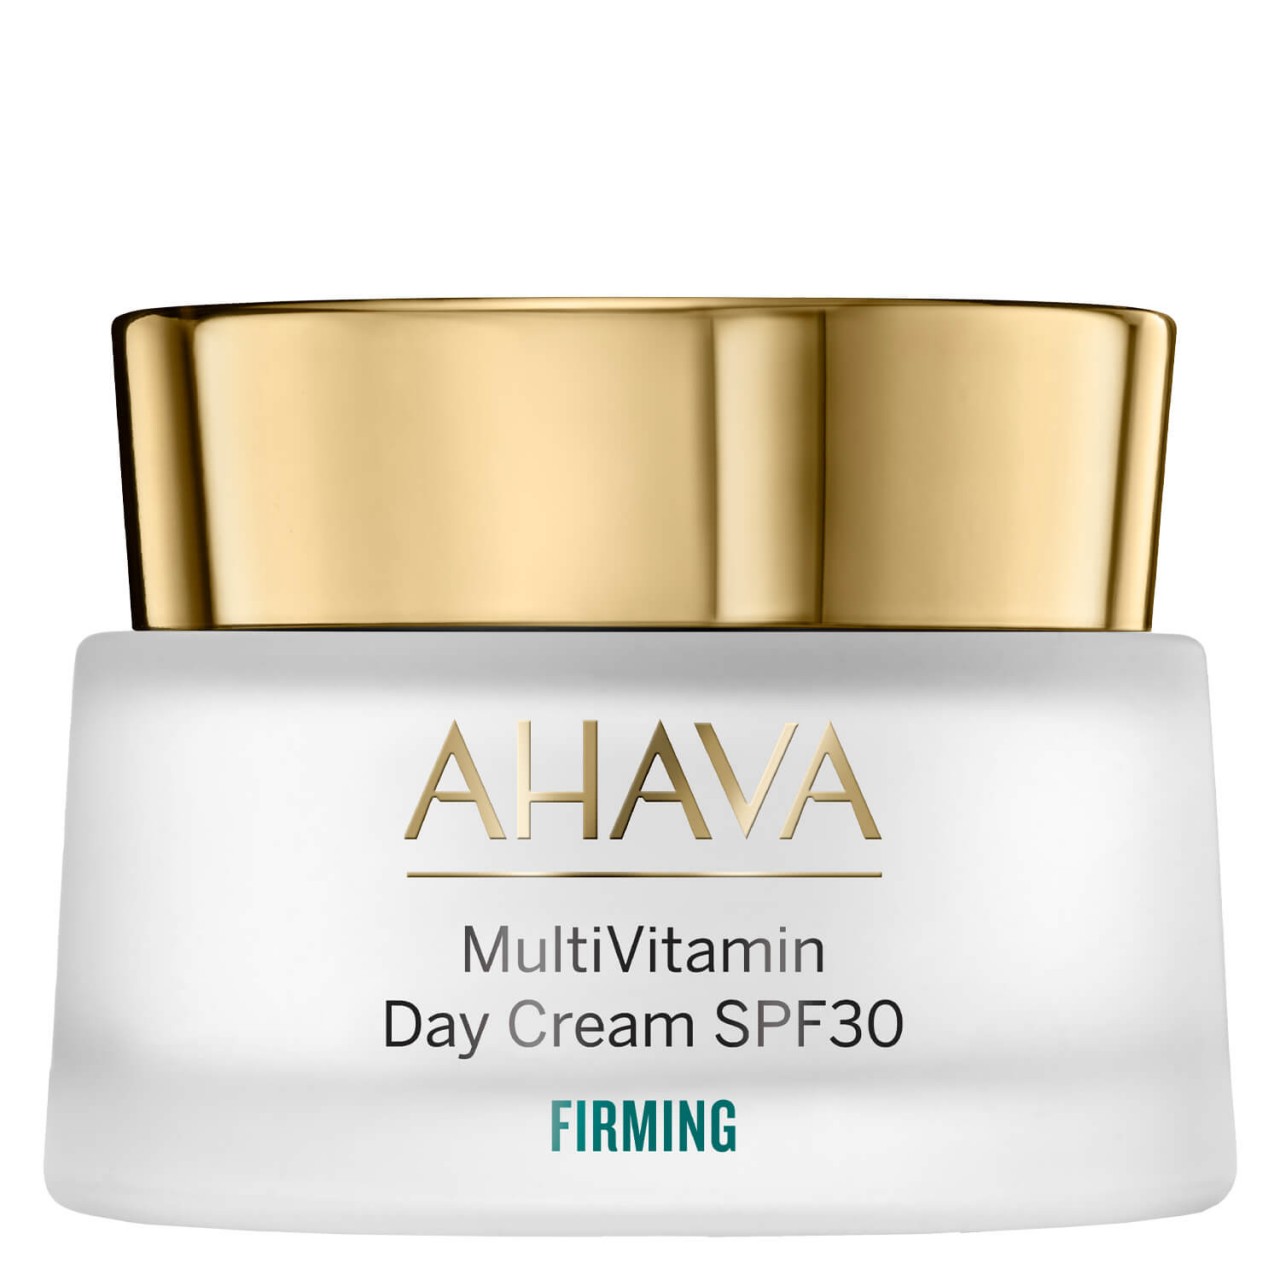 Multivitamin - Pro firming Day Cream SPF30 von Ahava